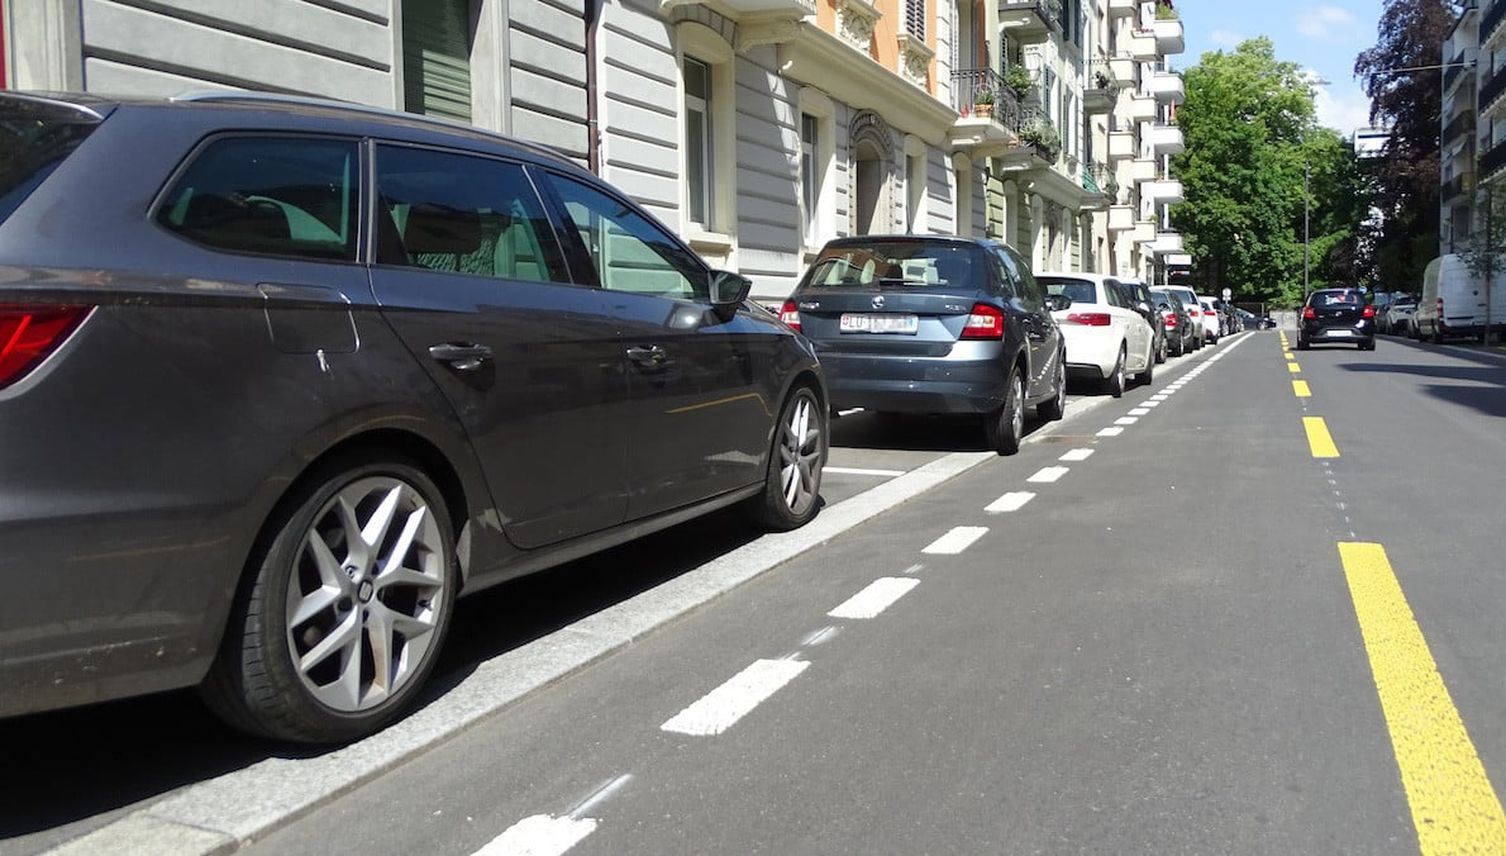 Dauerparkieren: Luzern gehört zu den teuersten, Zuger kommen günstig weg